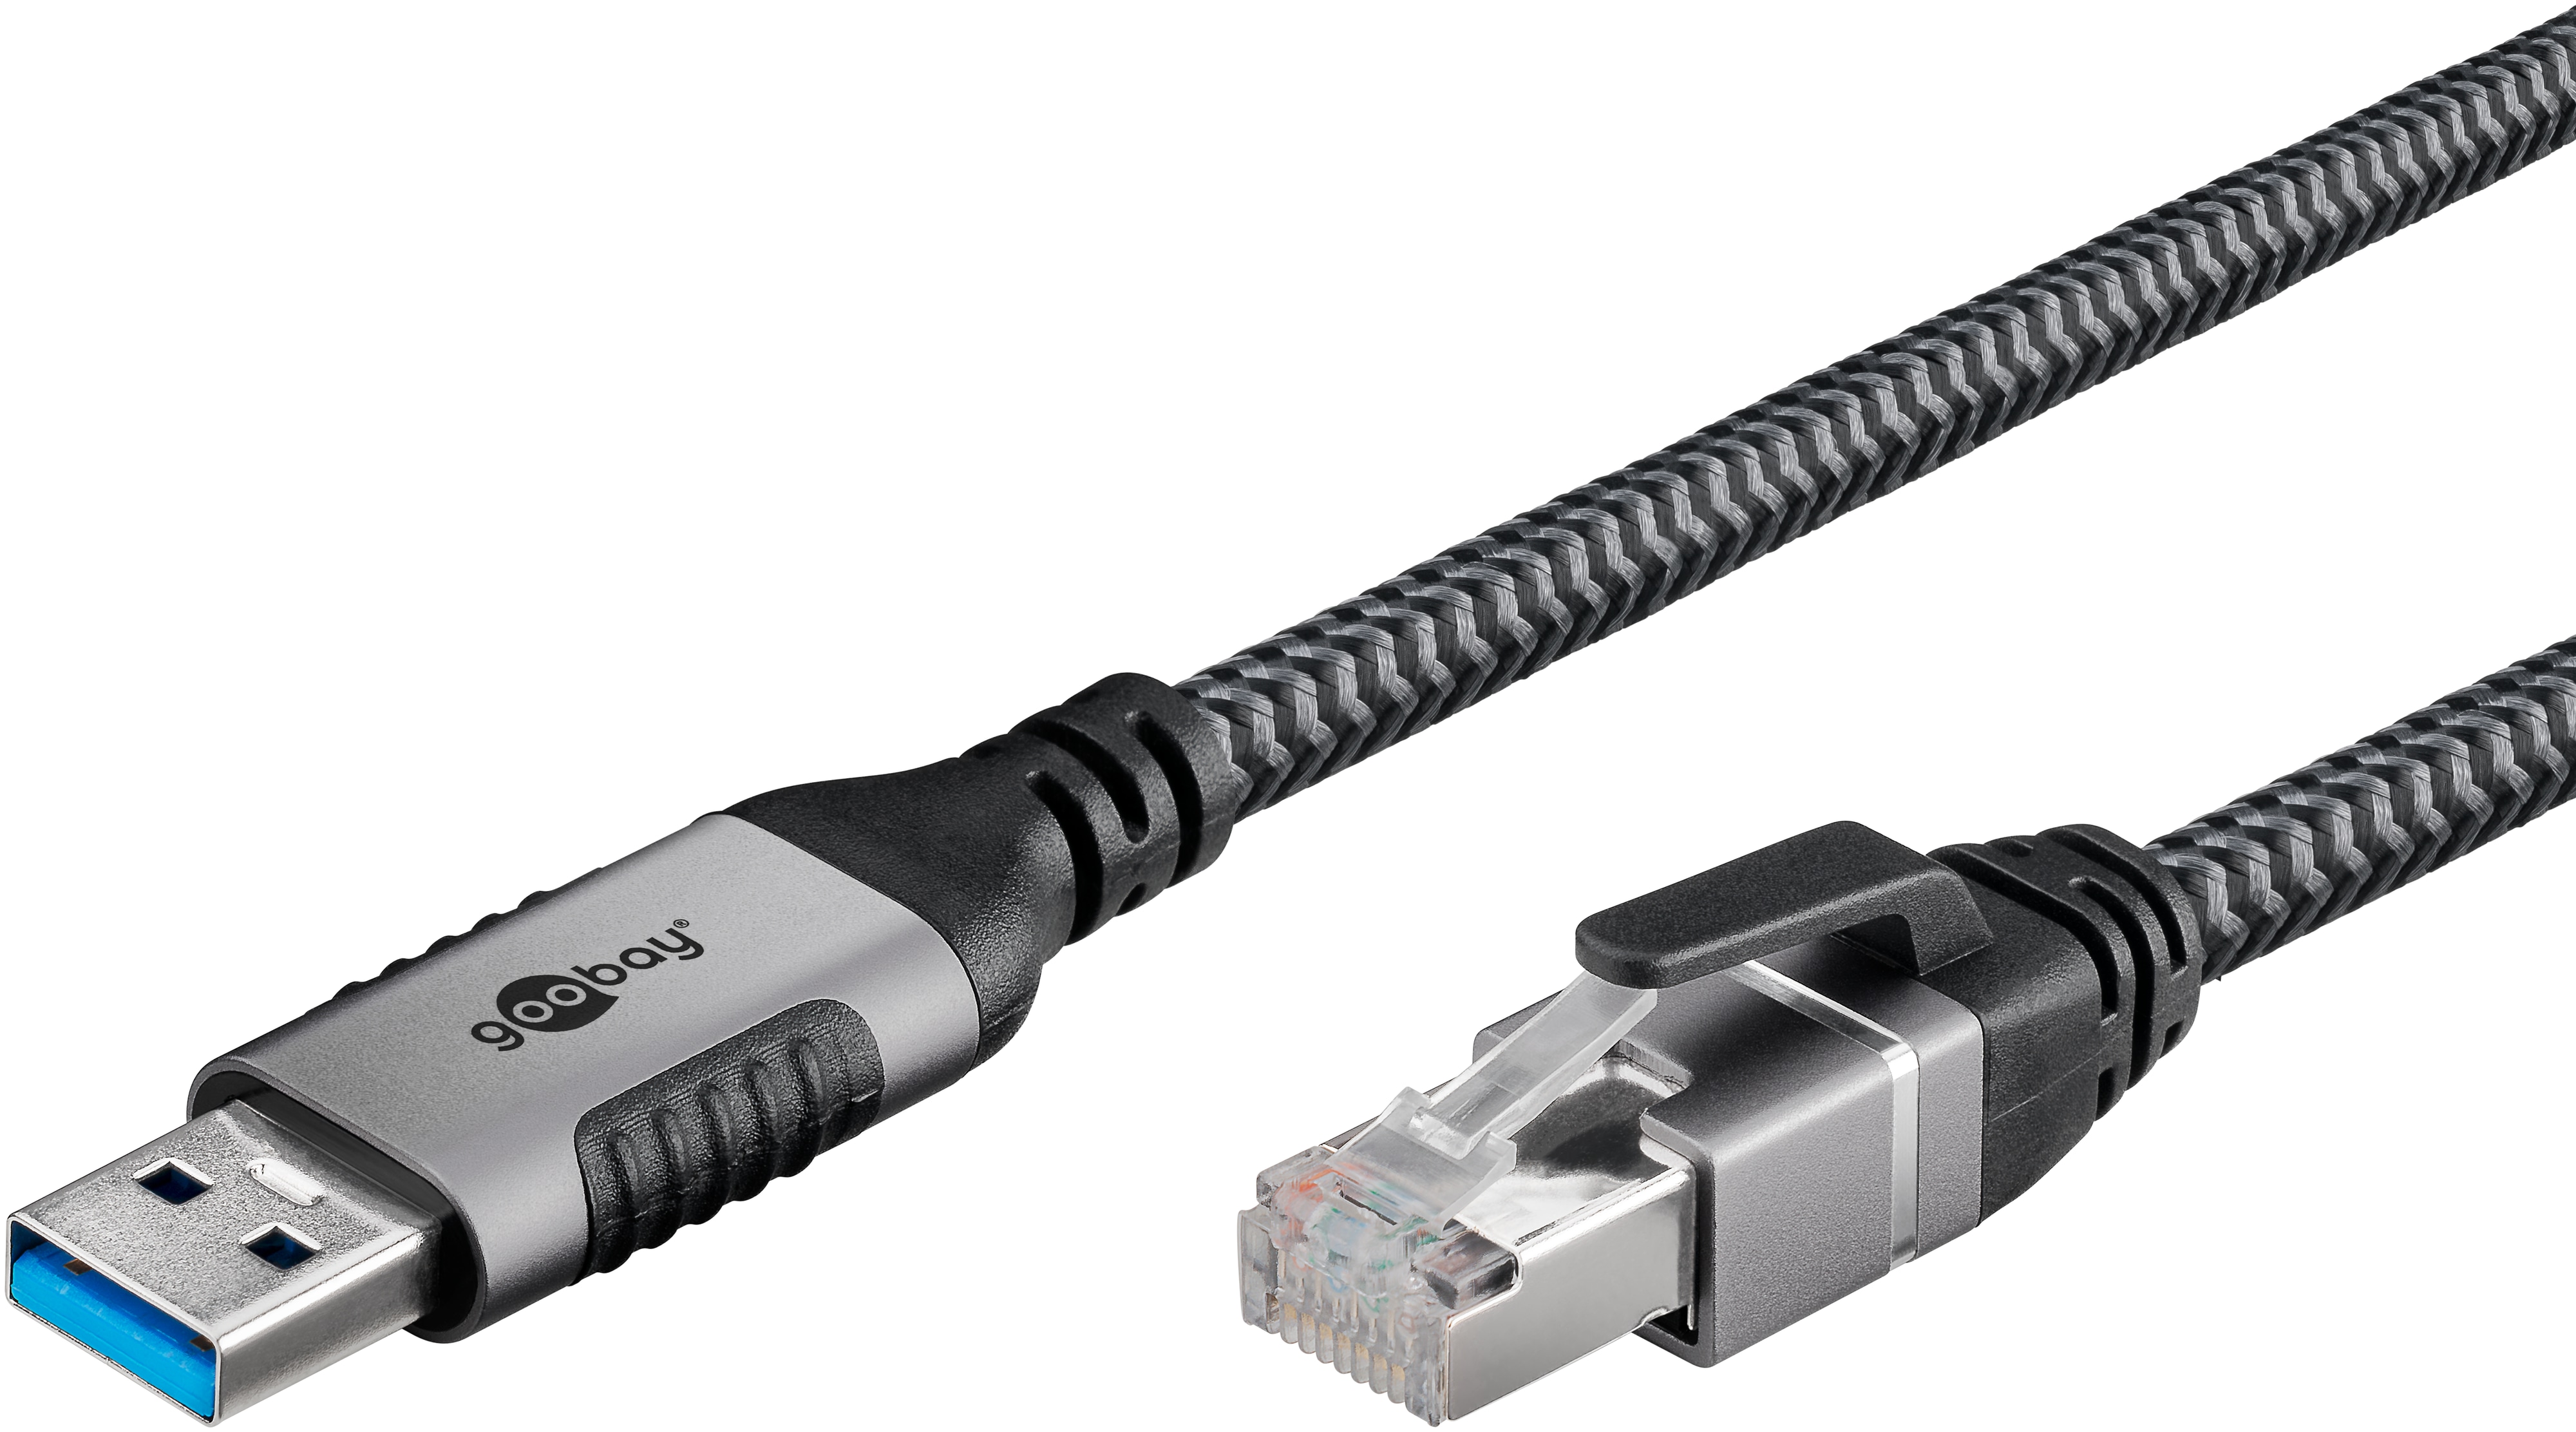 GOOBAY Ethernet-Kabel CAT6 USB-A 3.0 auf RJ45 15m